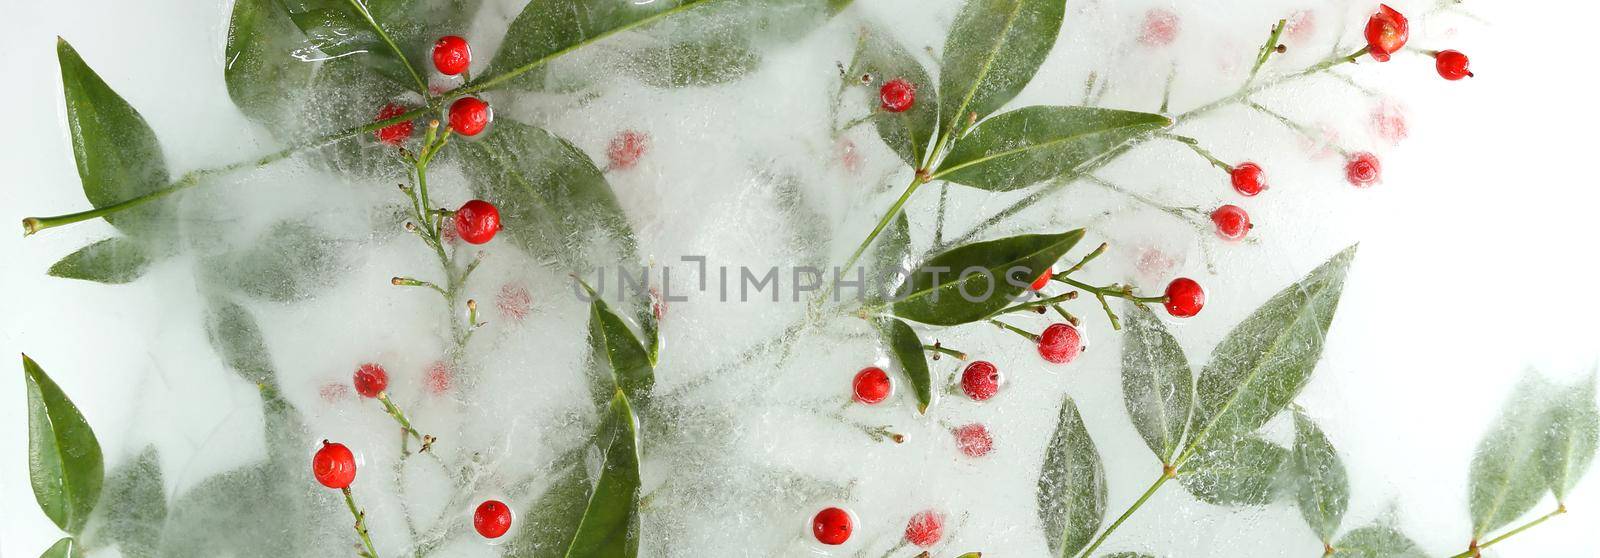 Frozen flowers arrangement in ice by NelliPolk